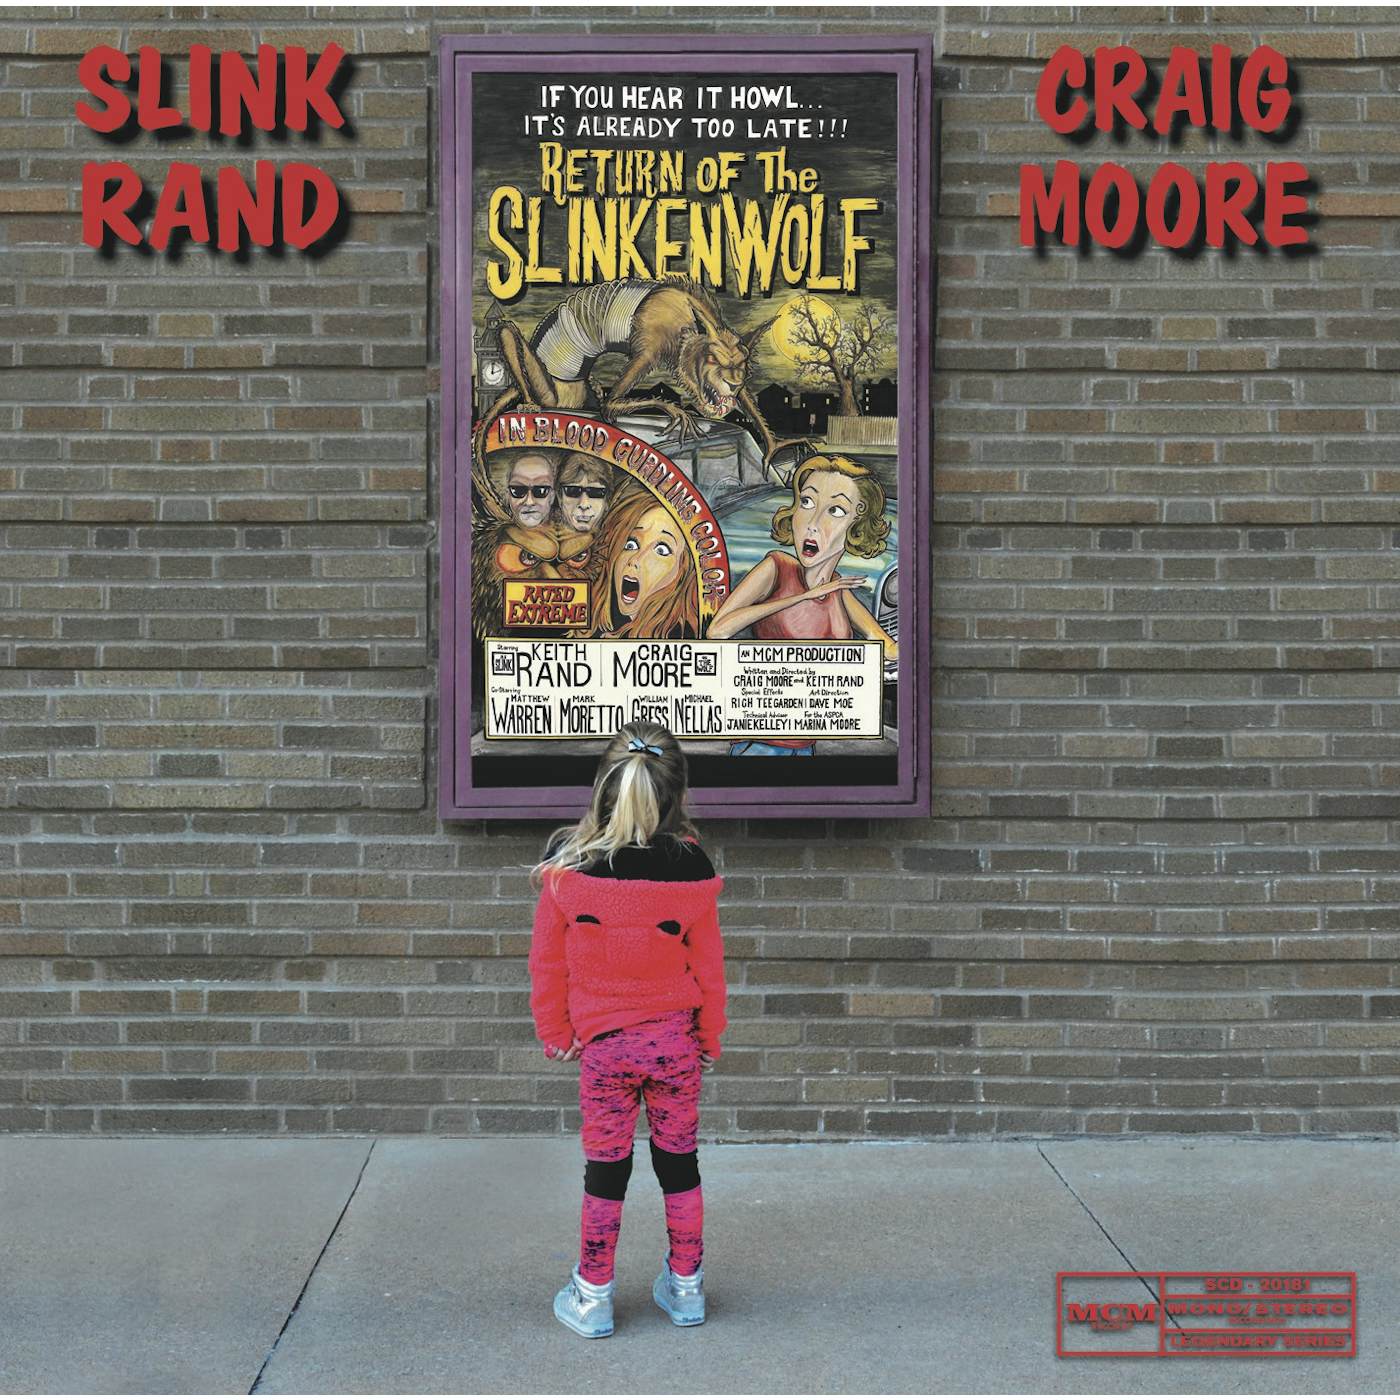 Slink Rand & Craig Moore RETURN OF THE SLINKENWOLF CD